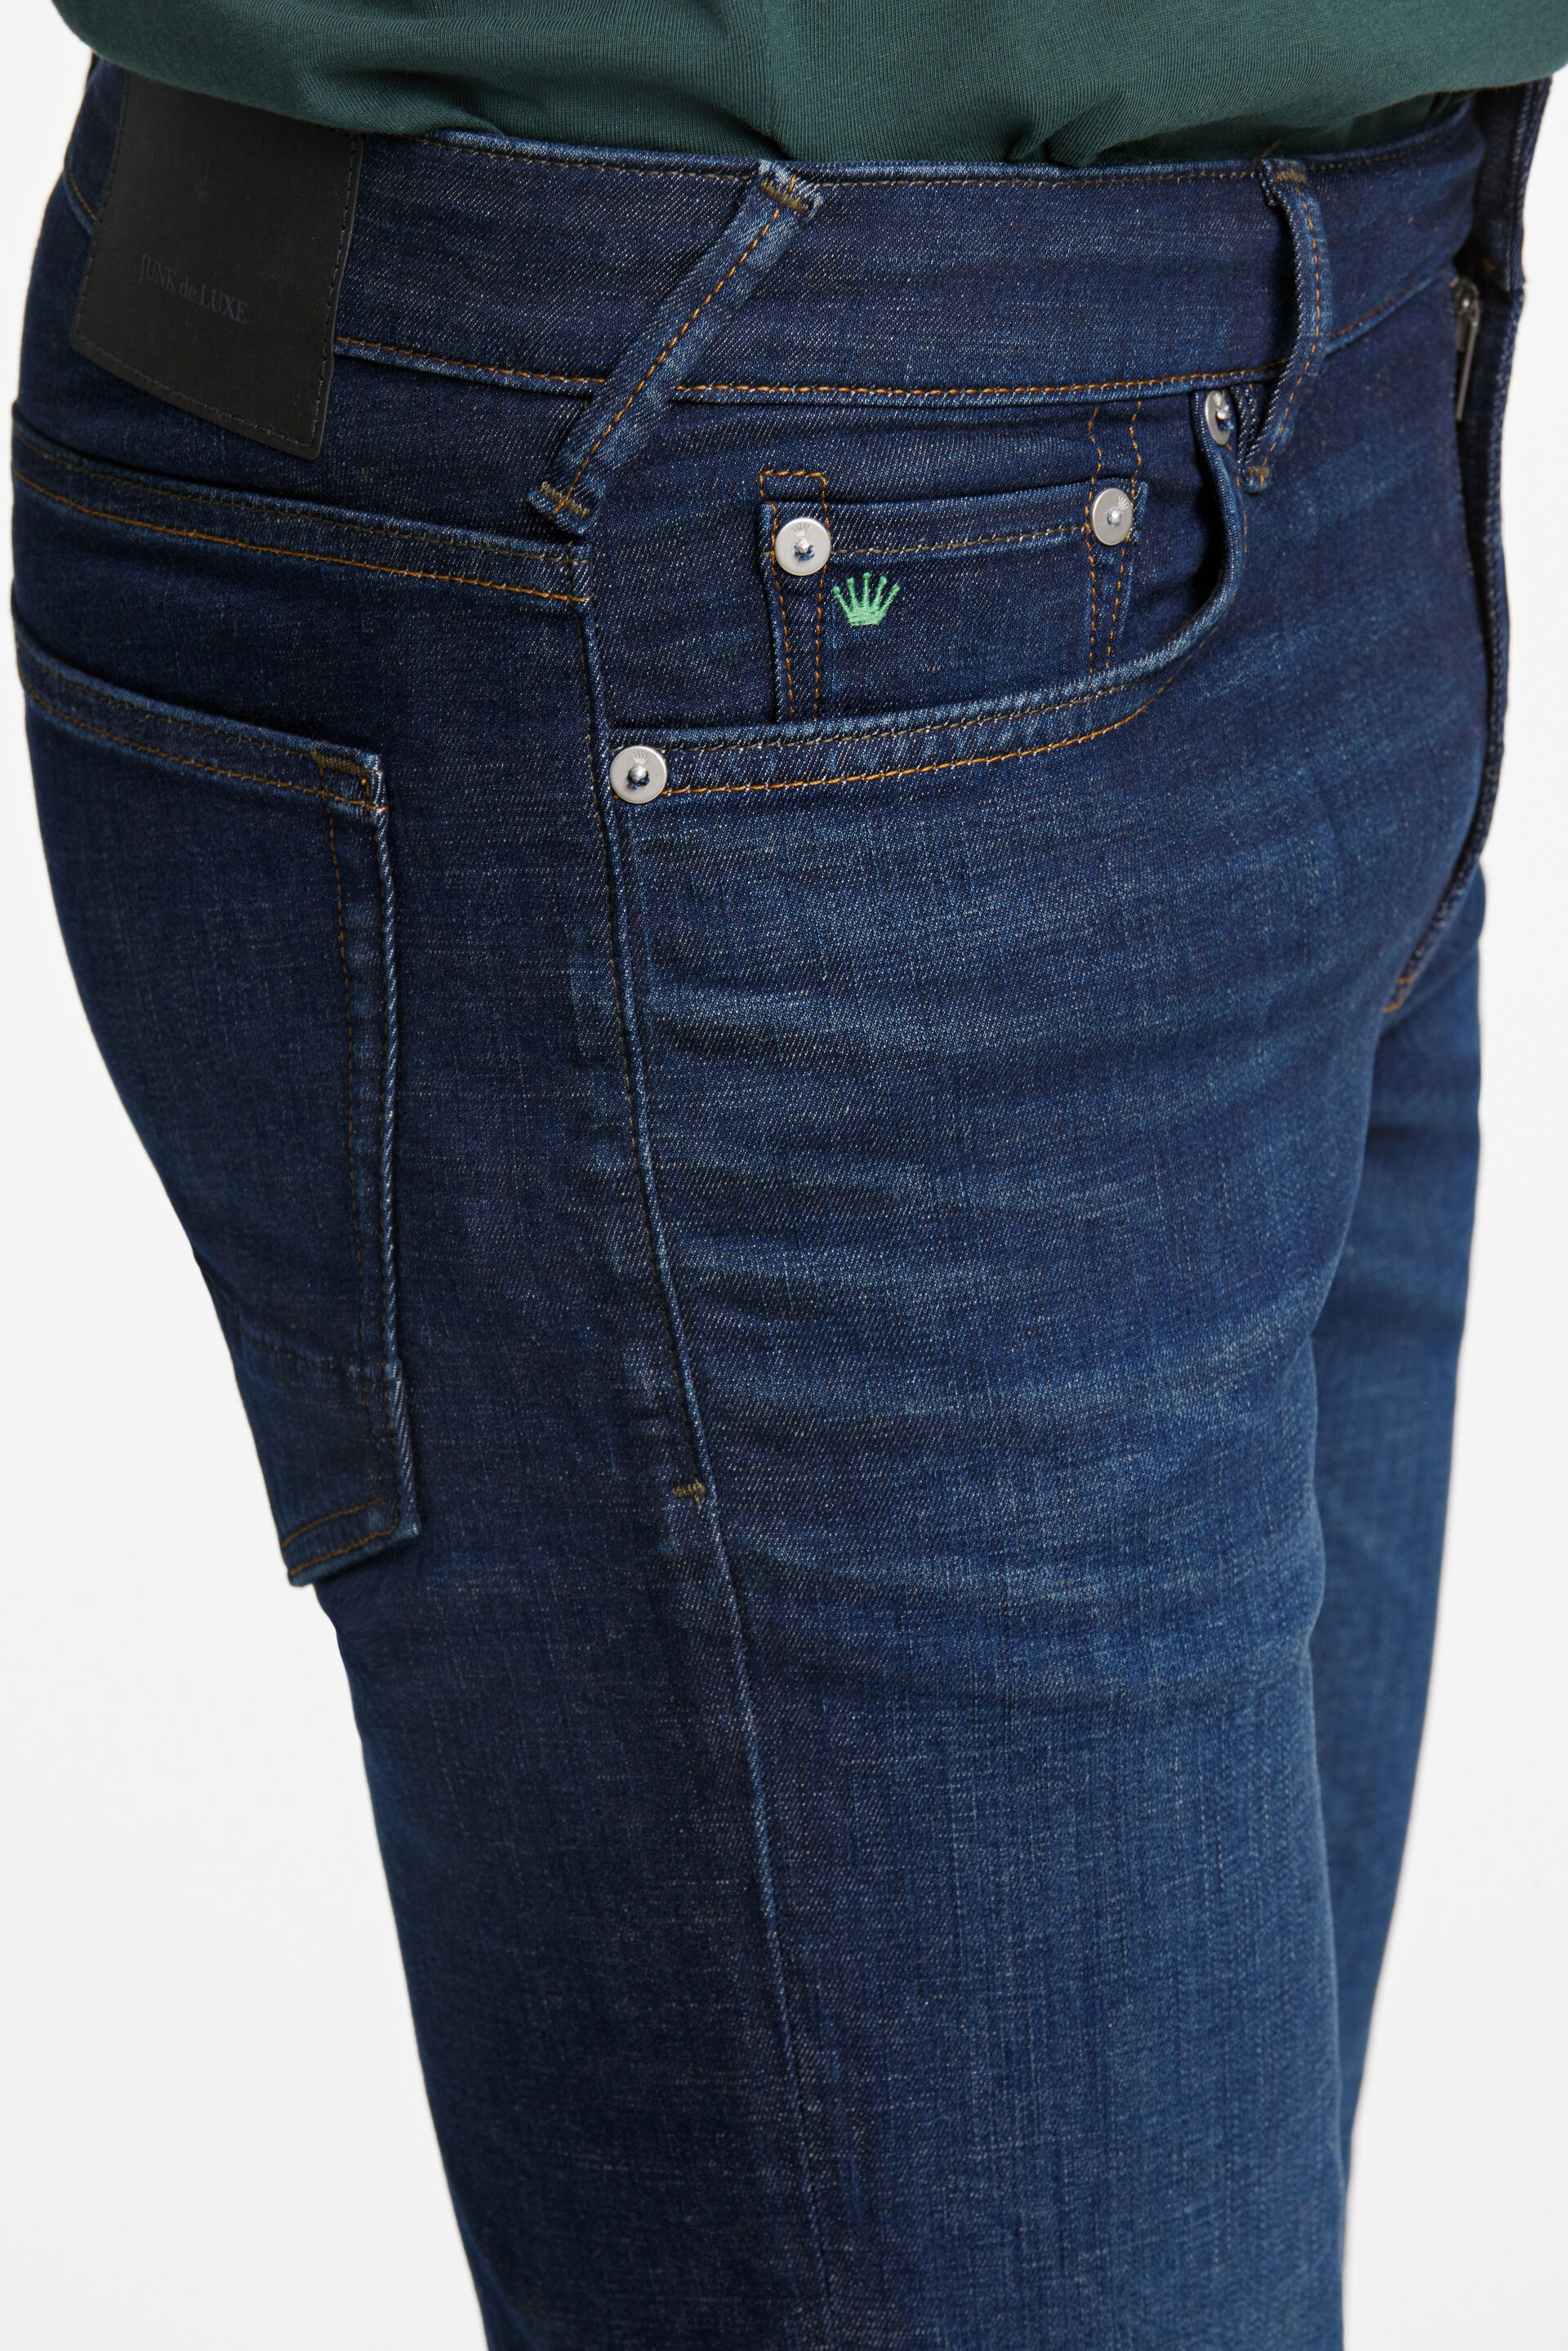 Junk de Luxe  Jeans 60-025020